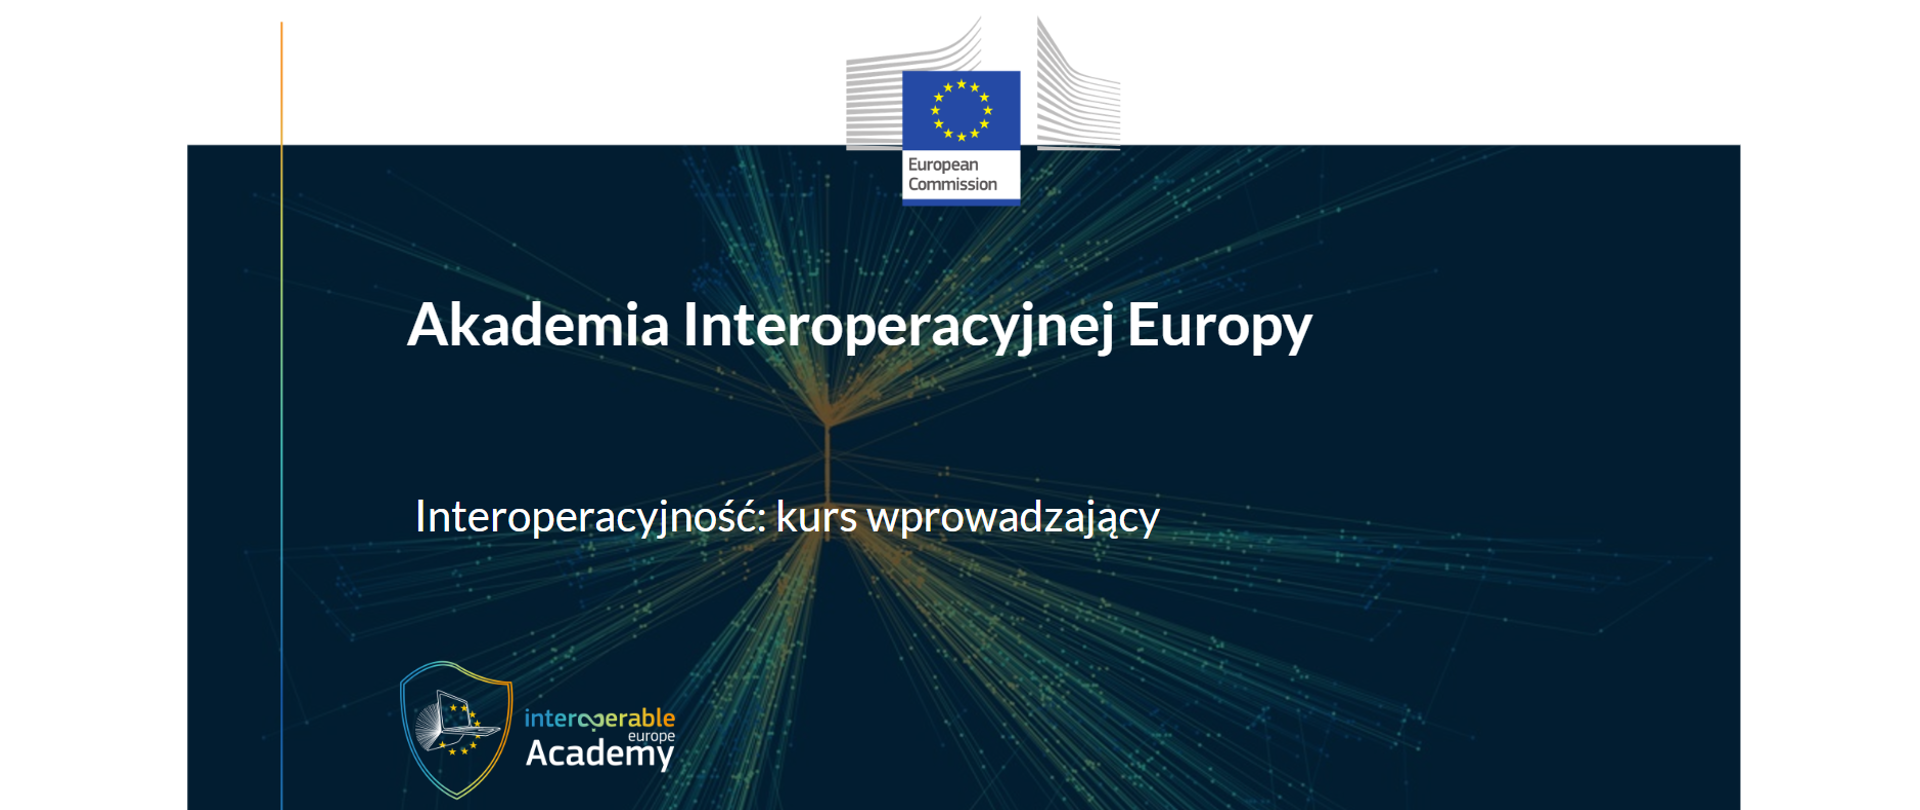 Pierwsza strona kursu: Akademia Interoperacyjnej Europu Interoperacyjność: kurs wprowadzający